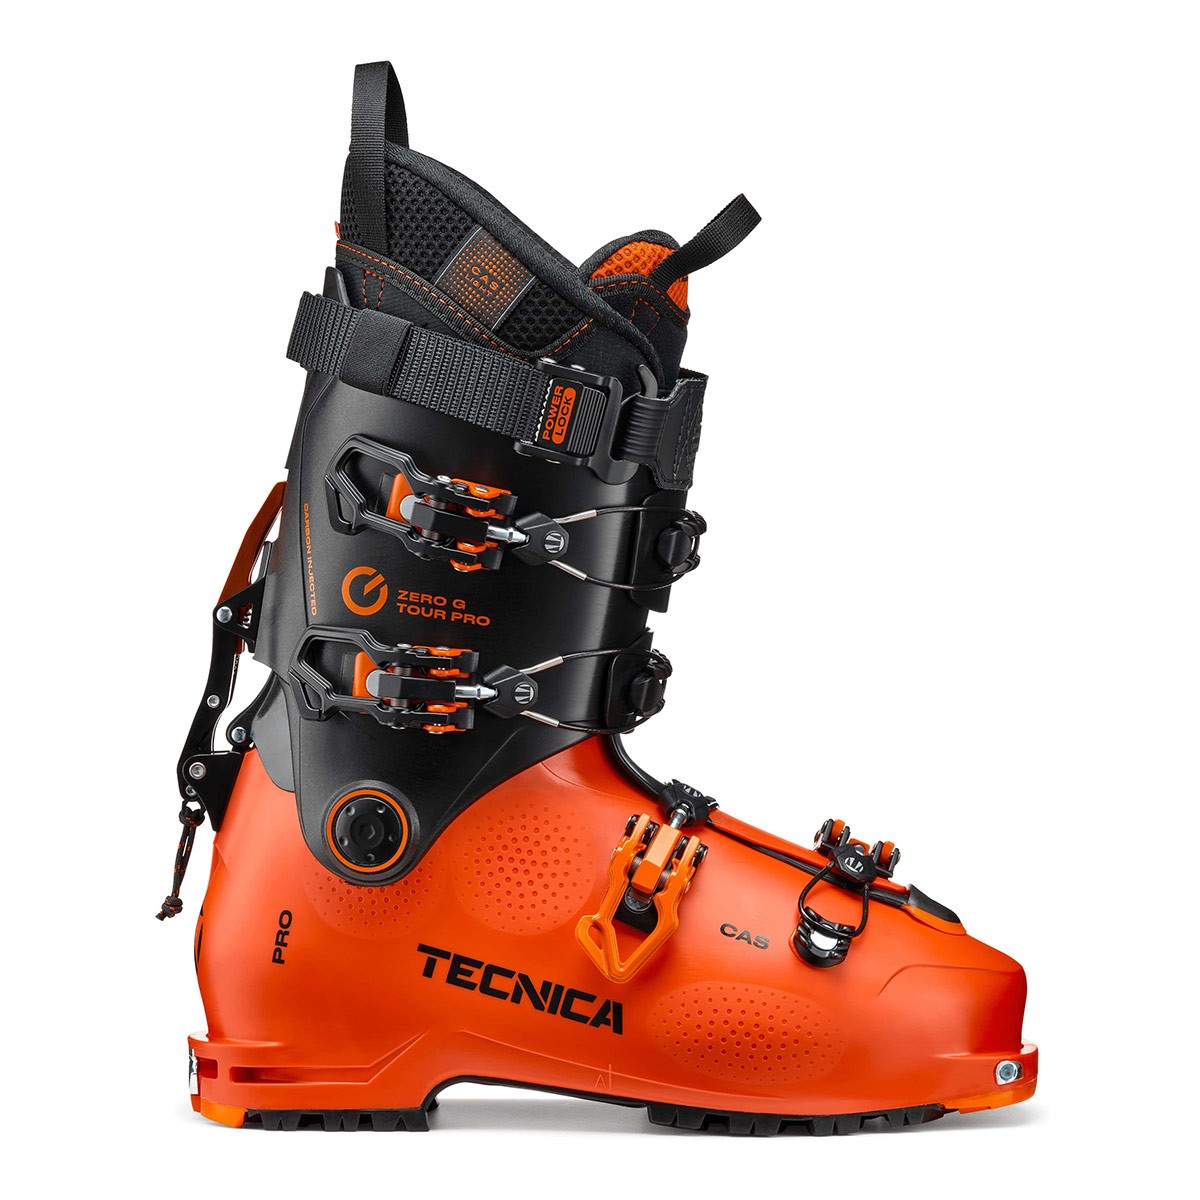  Scarponi alpinismo Tecnica Zero G Tour Pro (Colore: Orange Black, Taglia: 27) 